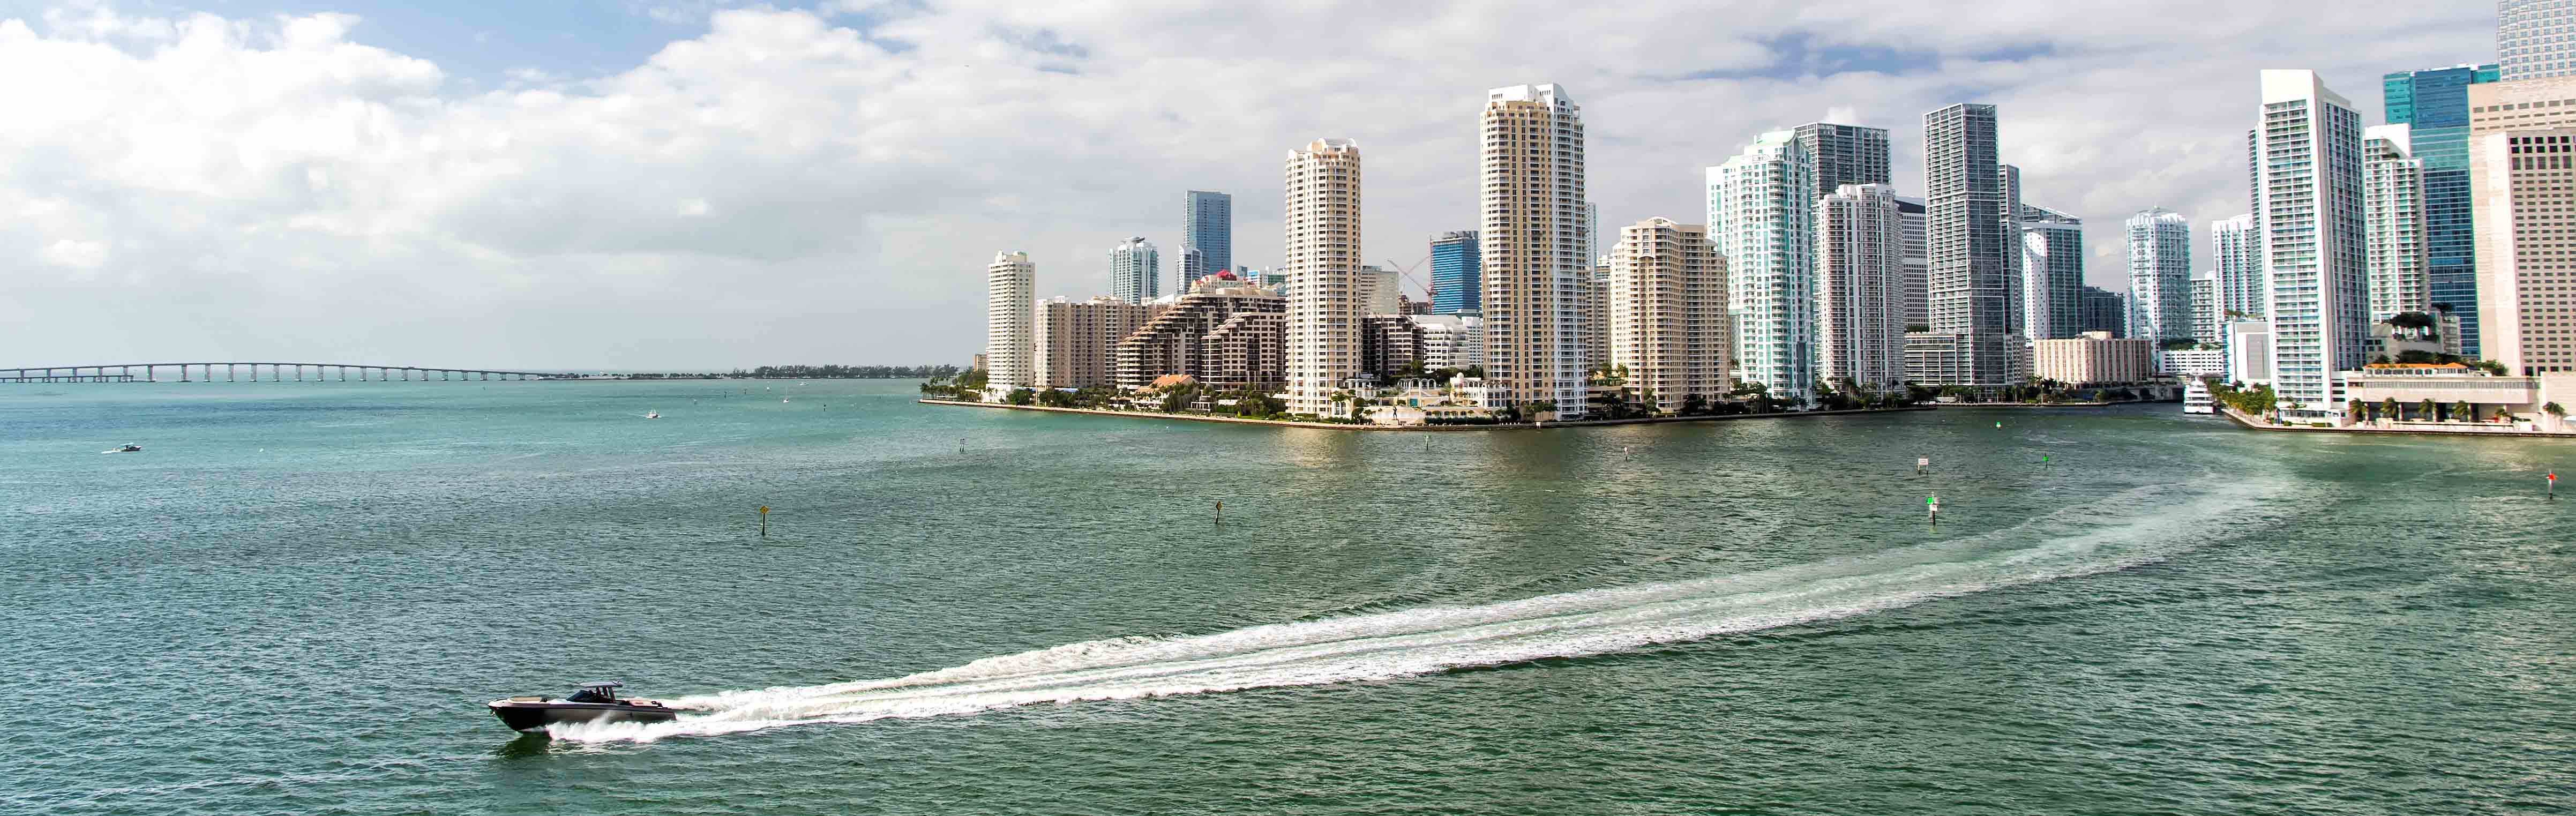 Miami Thriller Speedboat ride 